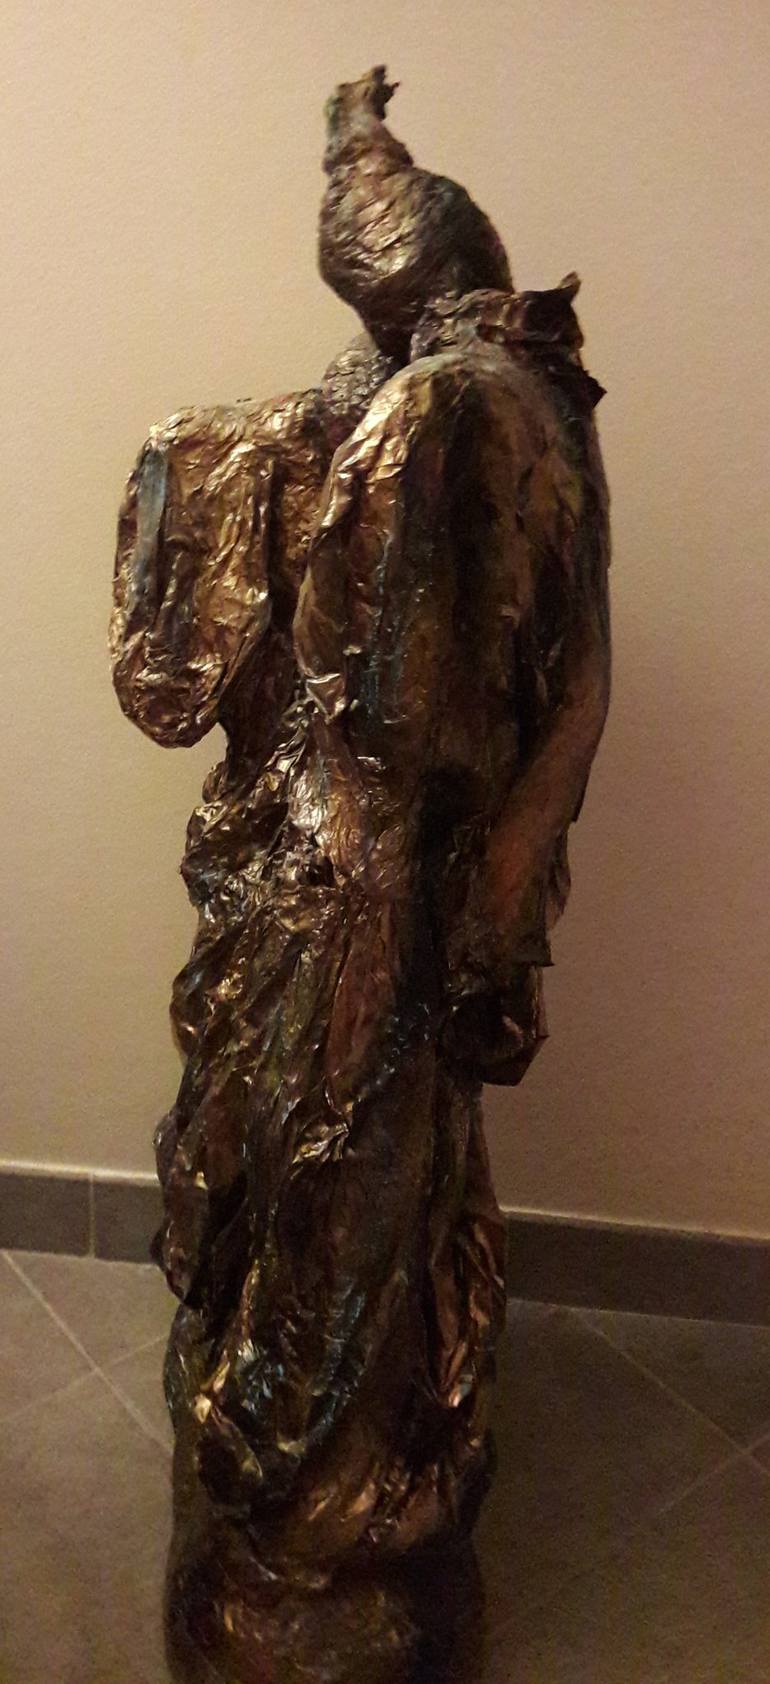 Original 3d Sculpture Love Sculpture by Guerry christiane